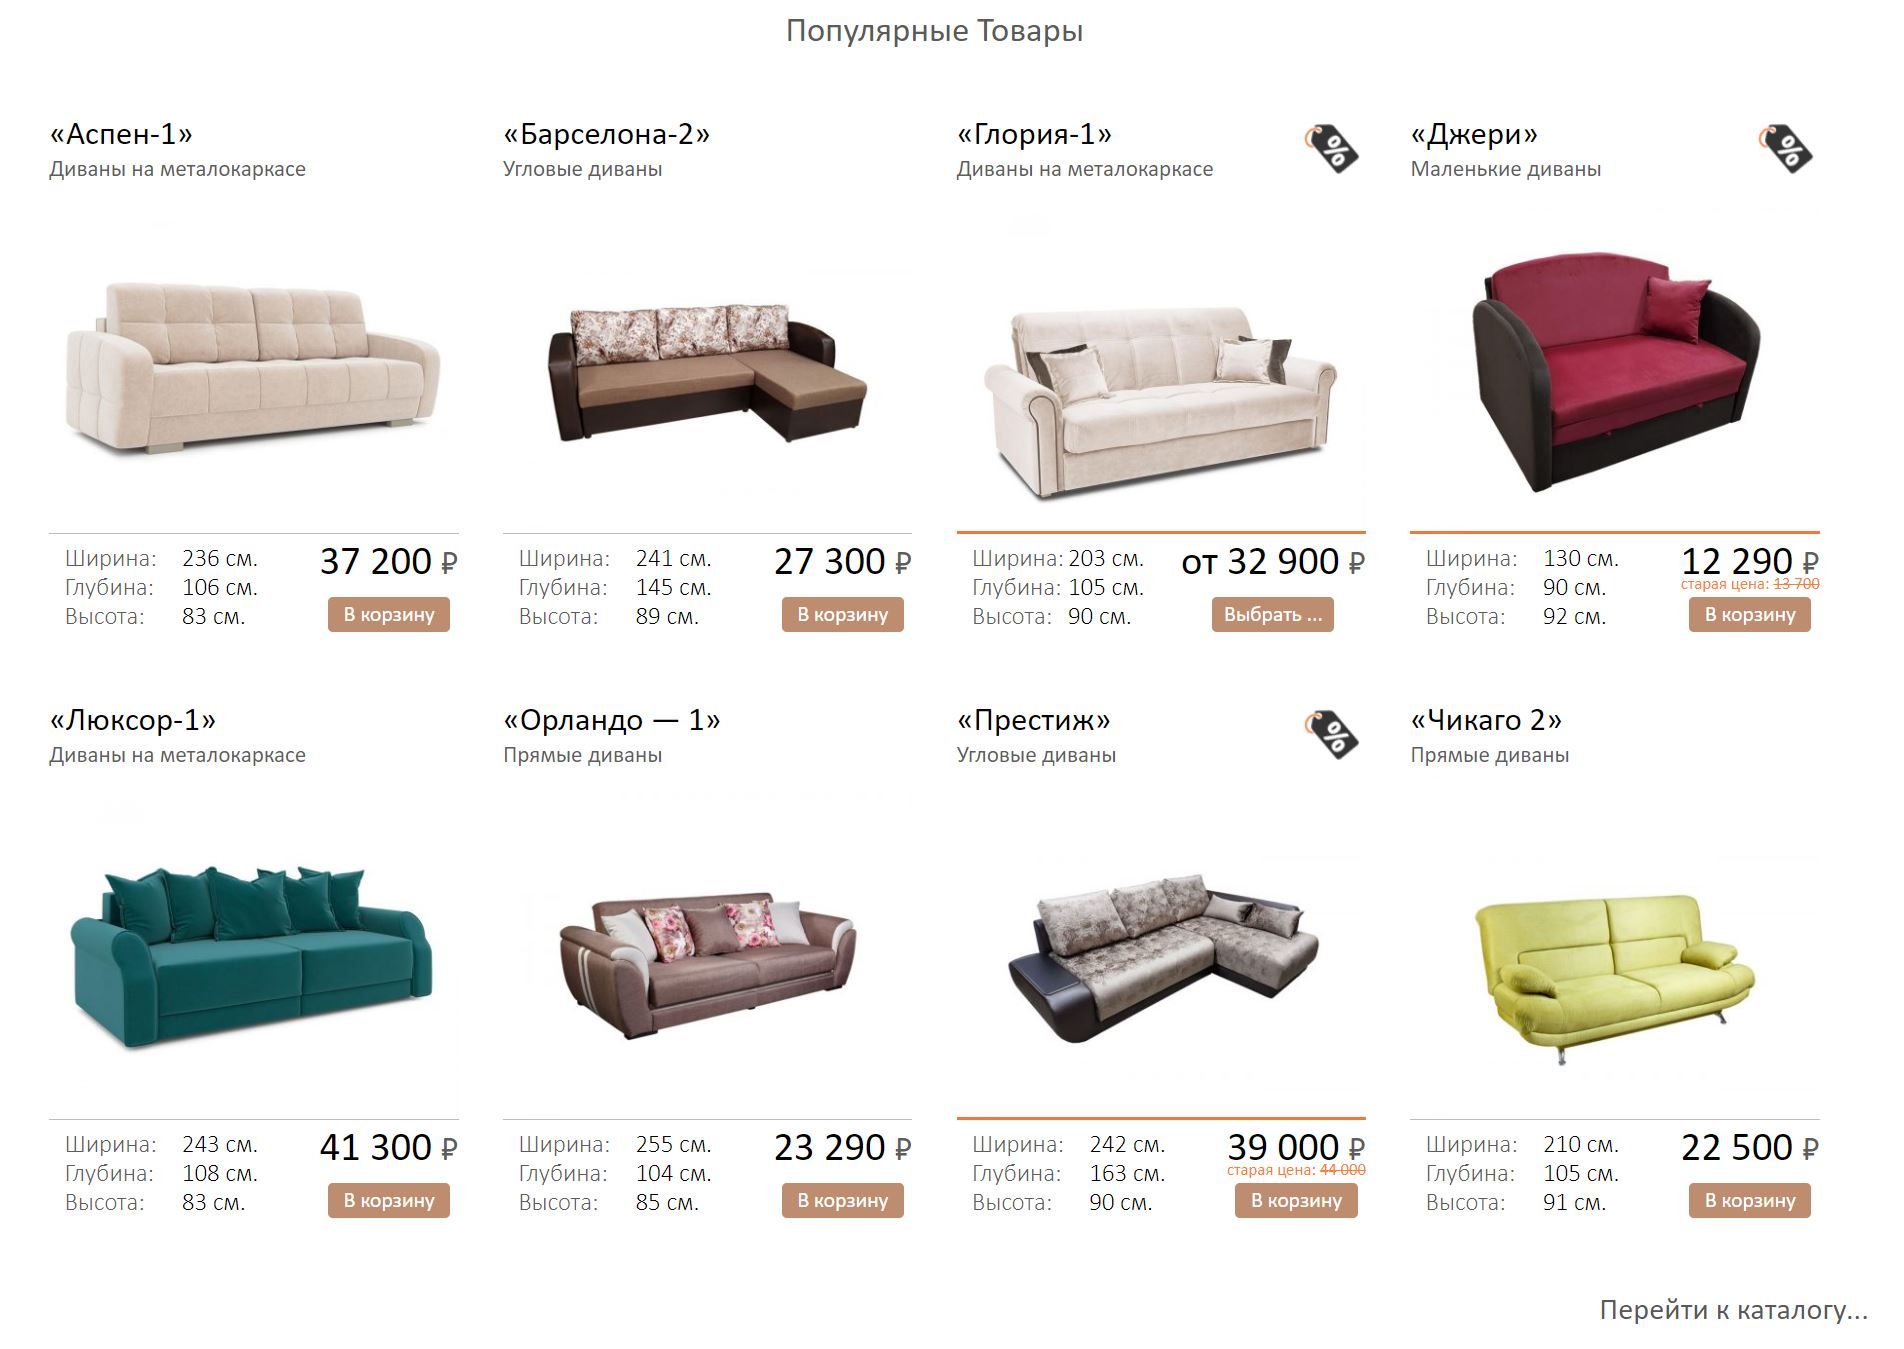 Рейтинг мебельных фабрик россии по производству мягкой мебели